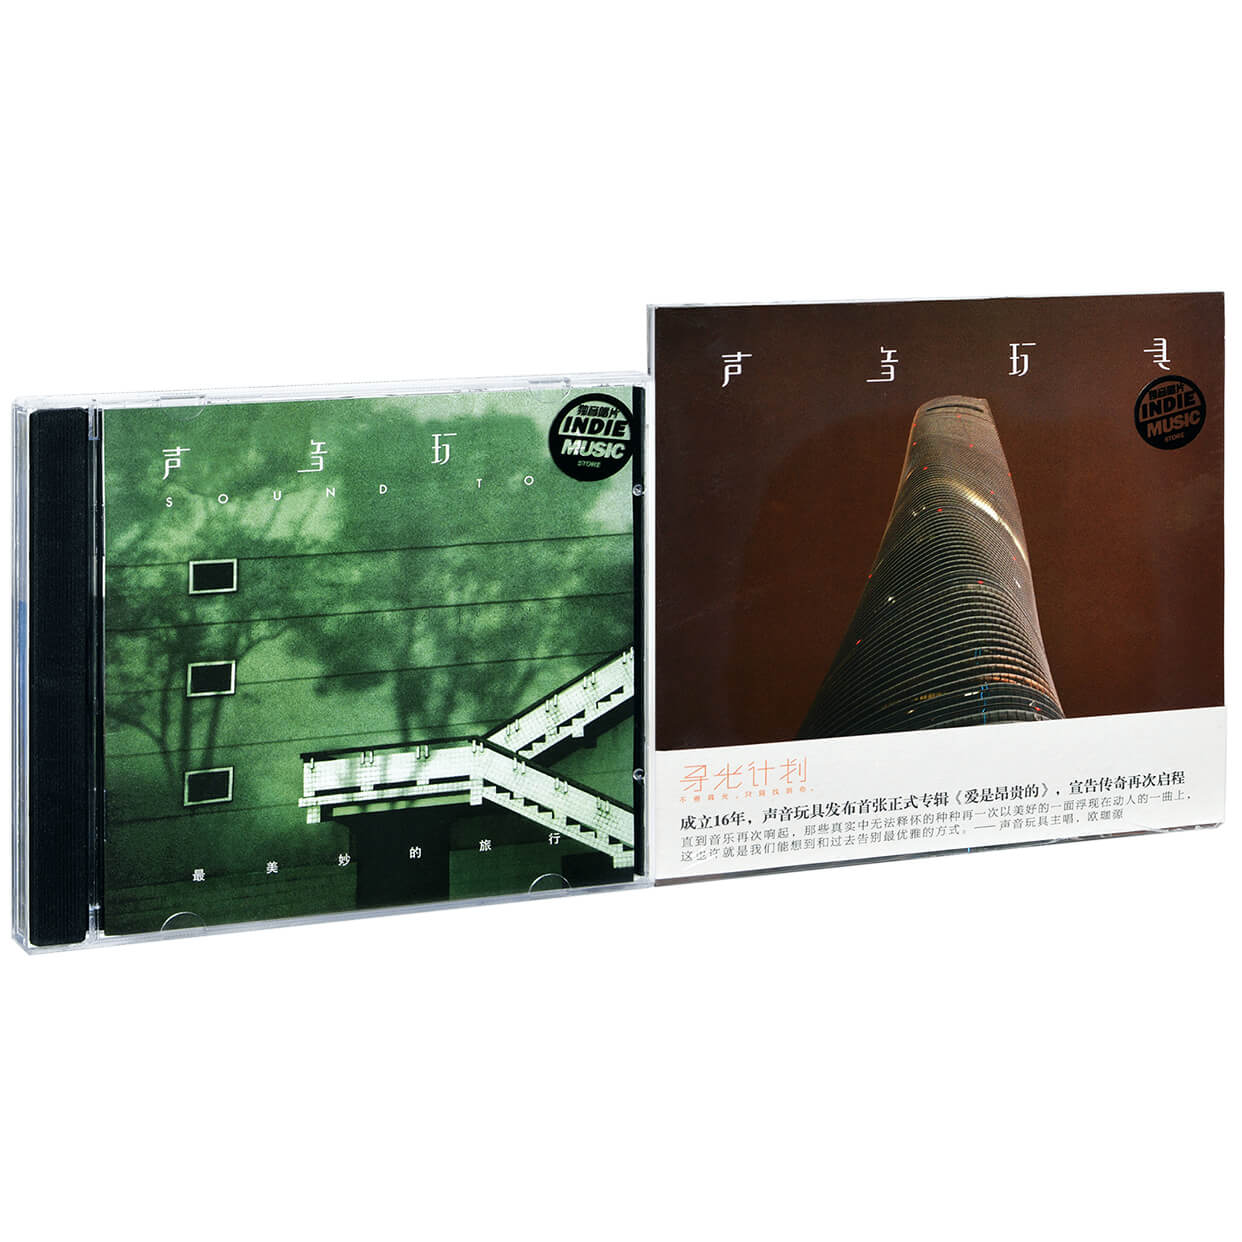 正版声音玩具2张专辑套装 最美妙的旅行+爱是昂贵的 2CD碟片